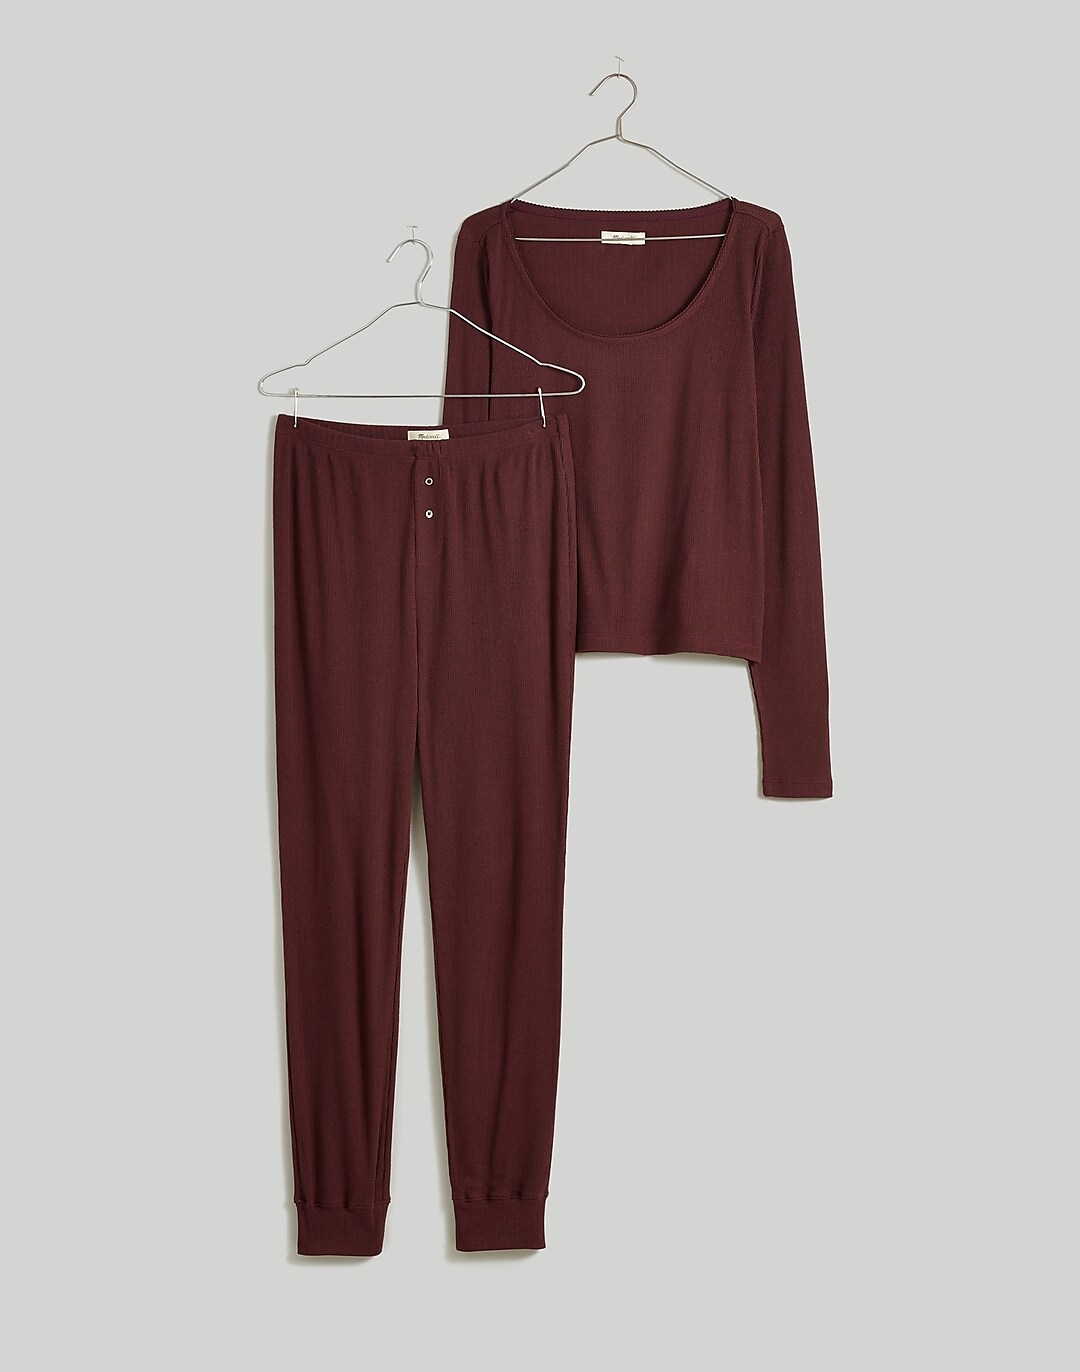 Pointelle Jersey Pajamas - Light gray - Ladies